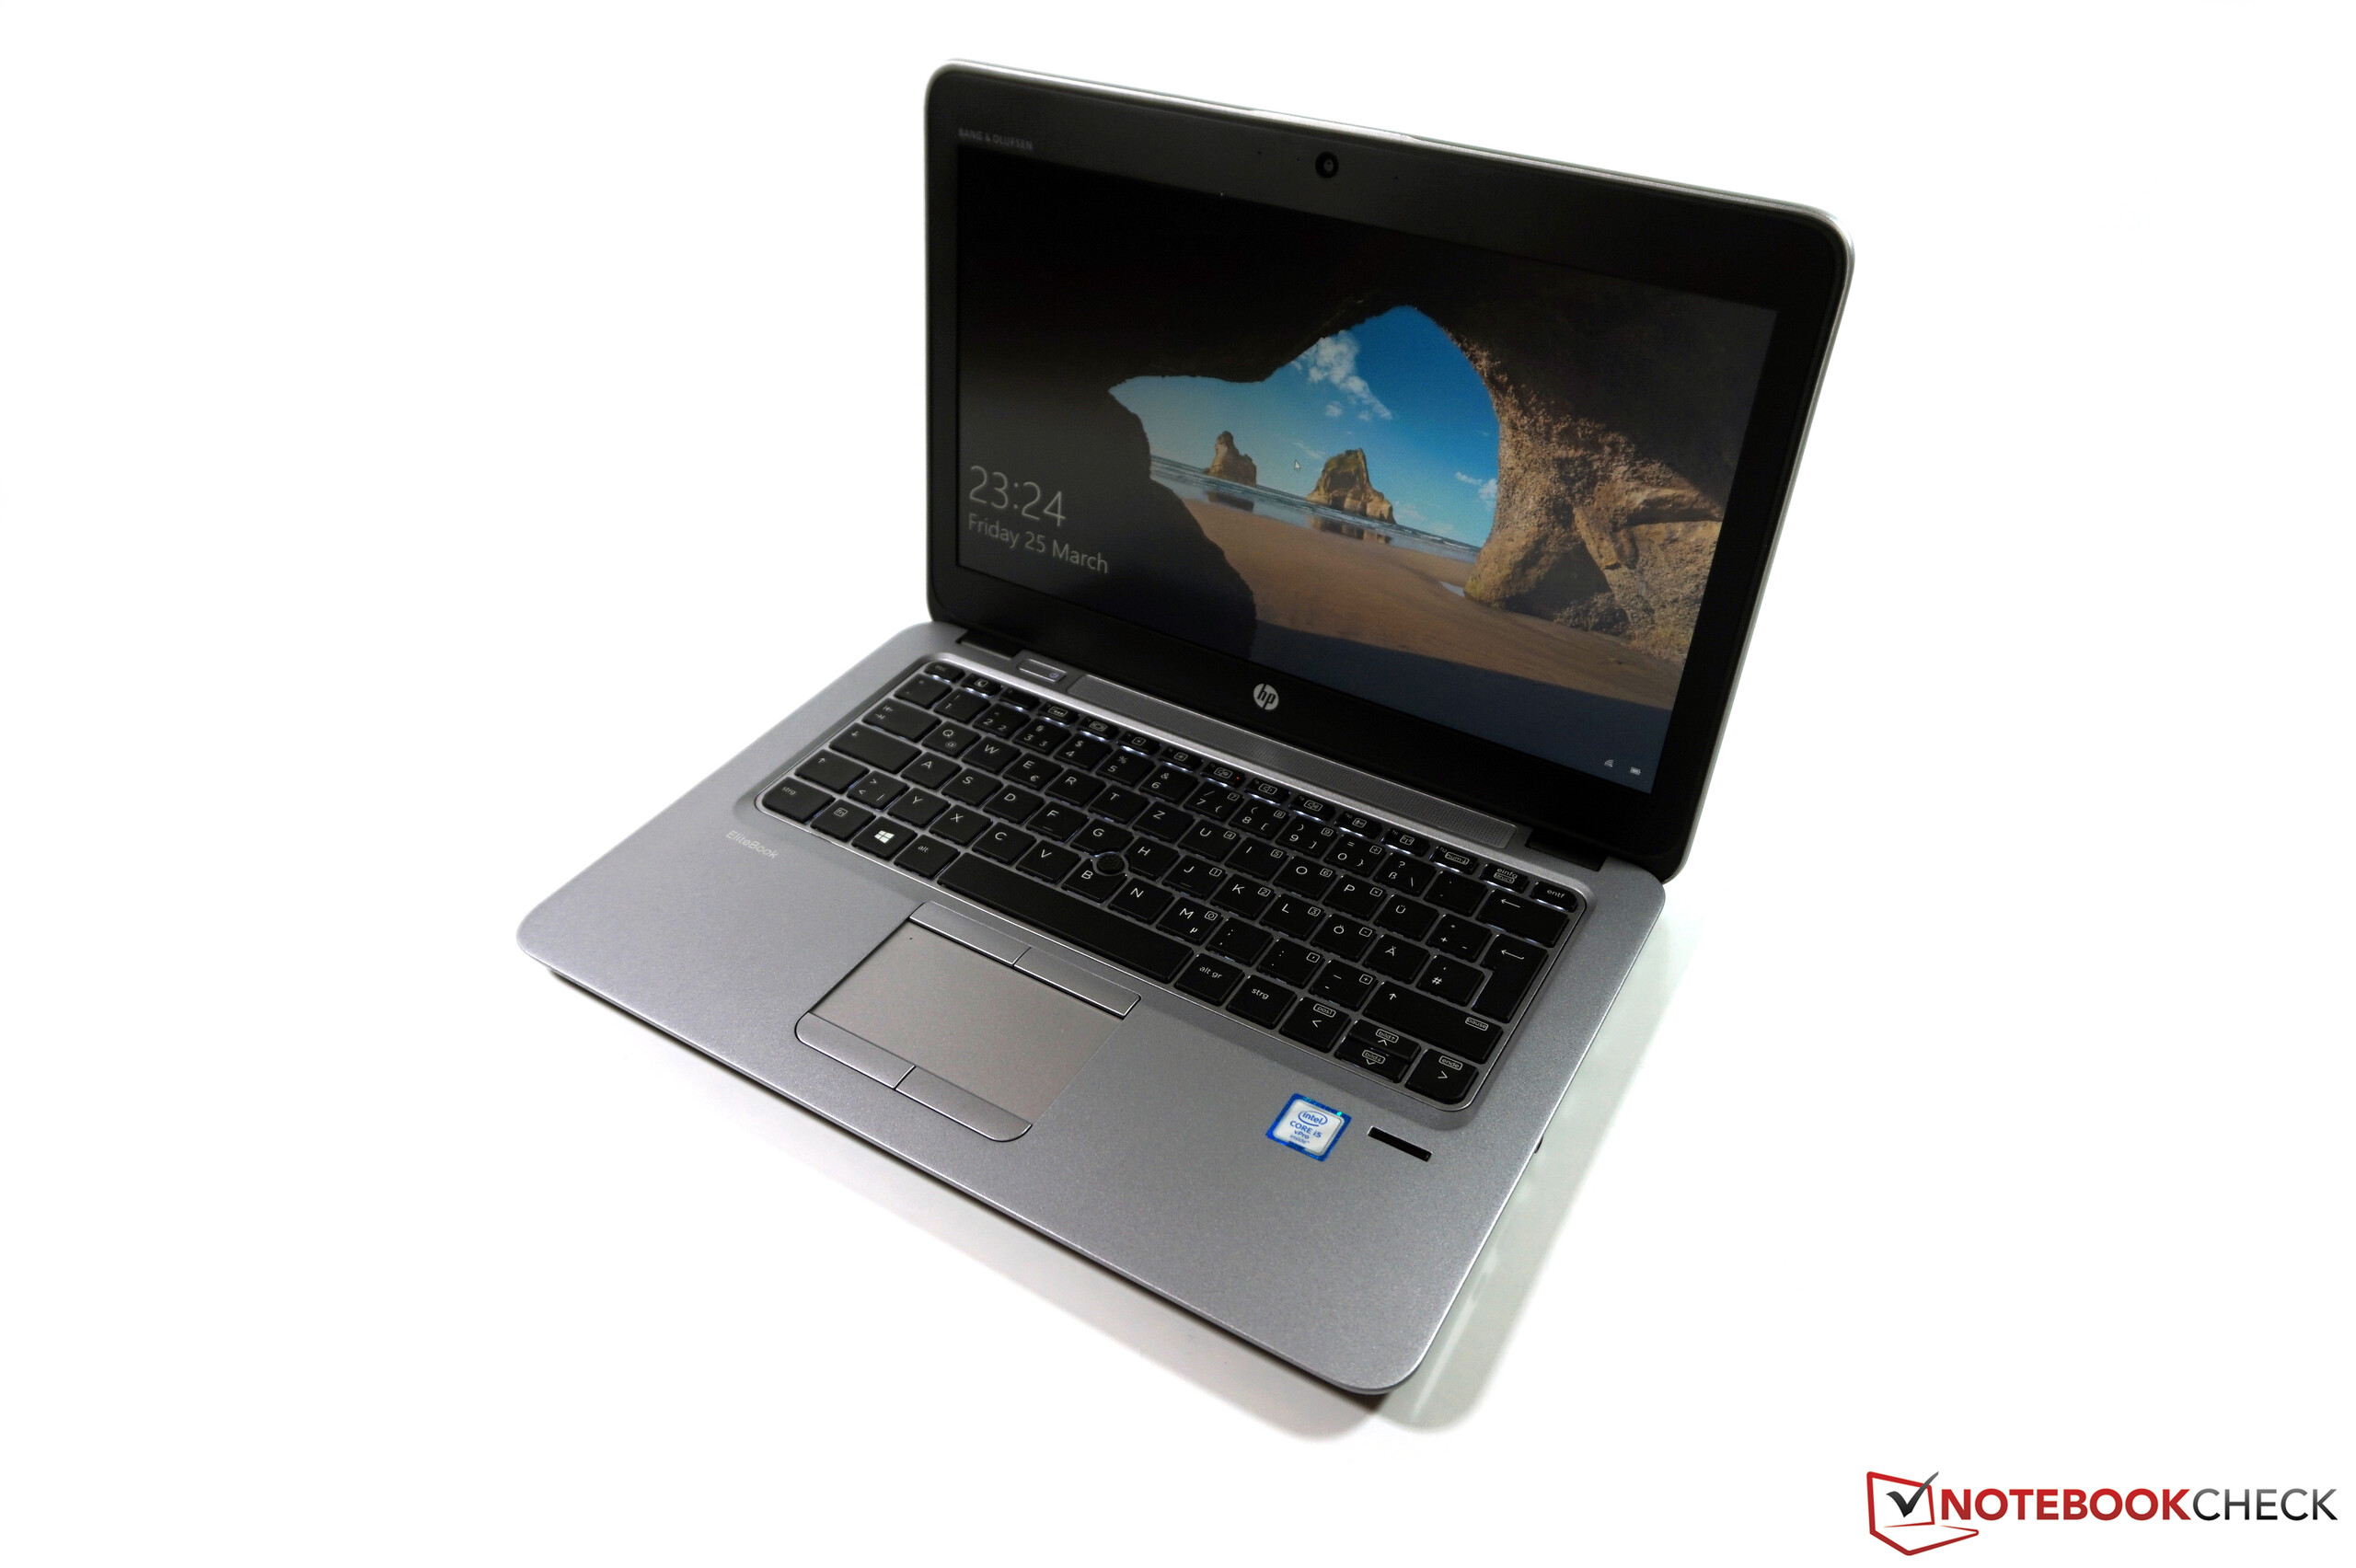 HP EliteBook 725 G3 Subnotebook Review - NotebookCheck.net Reviews